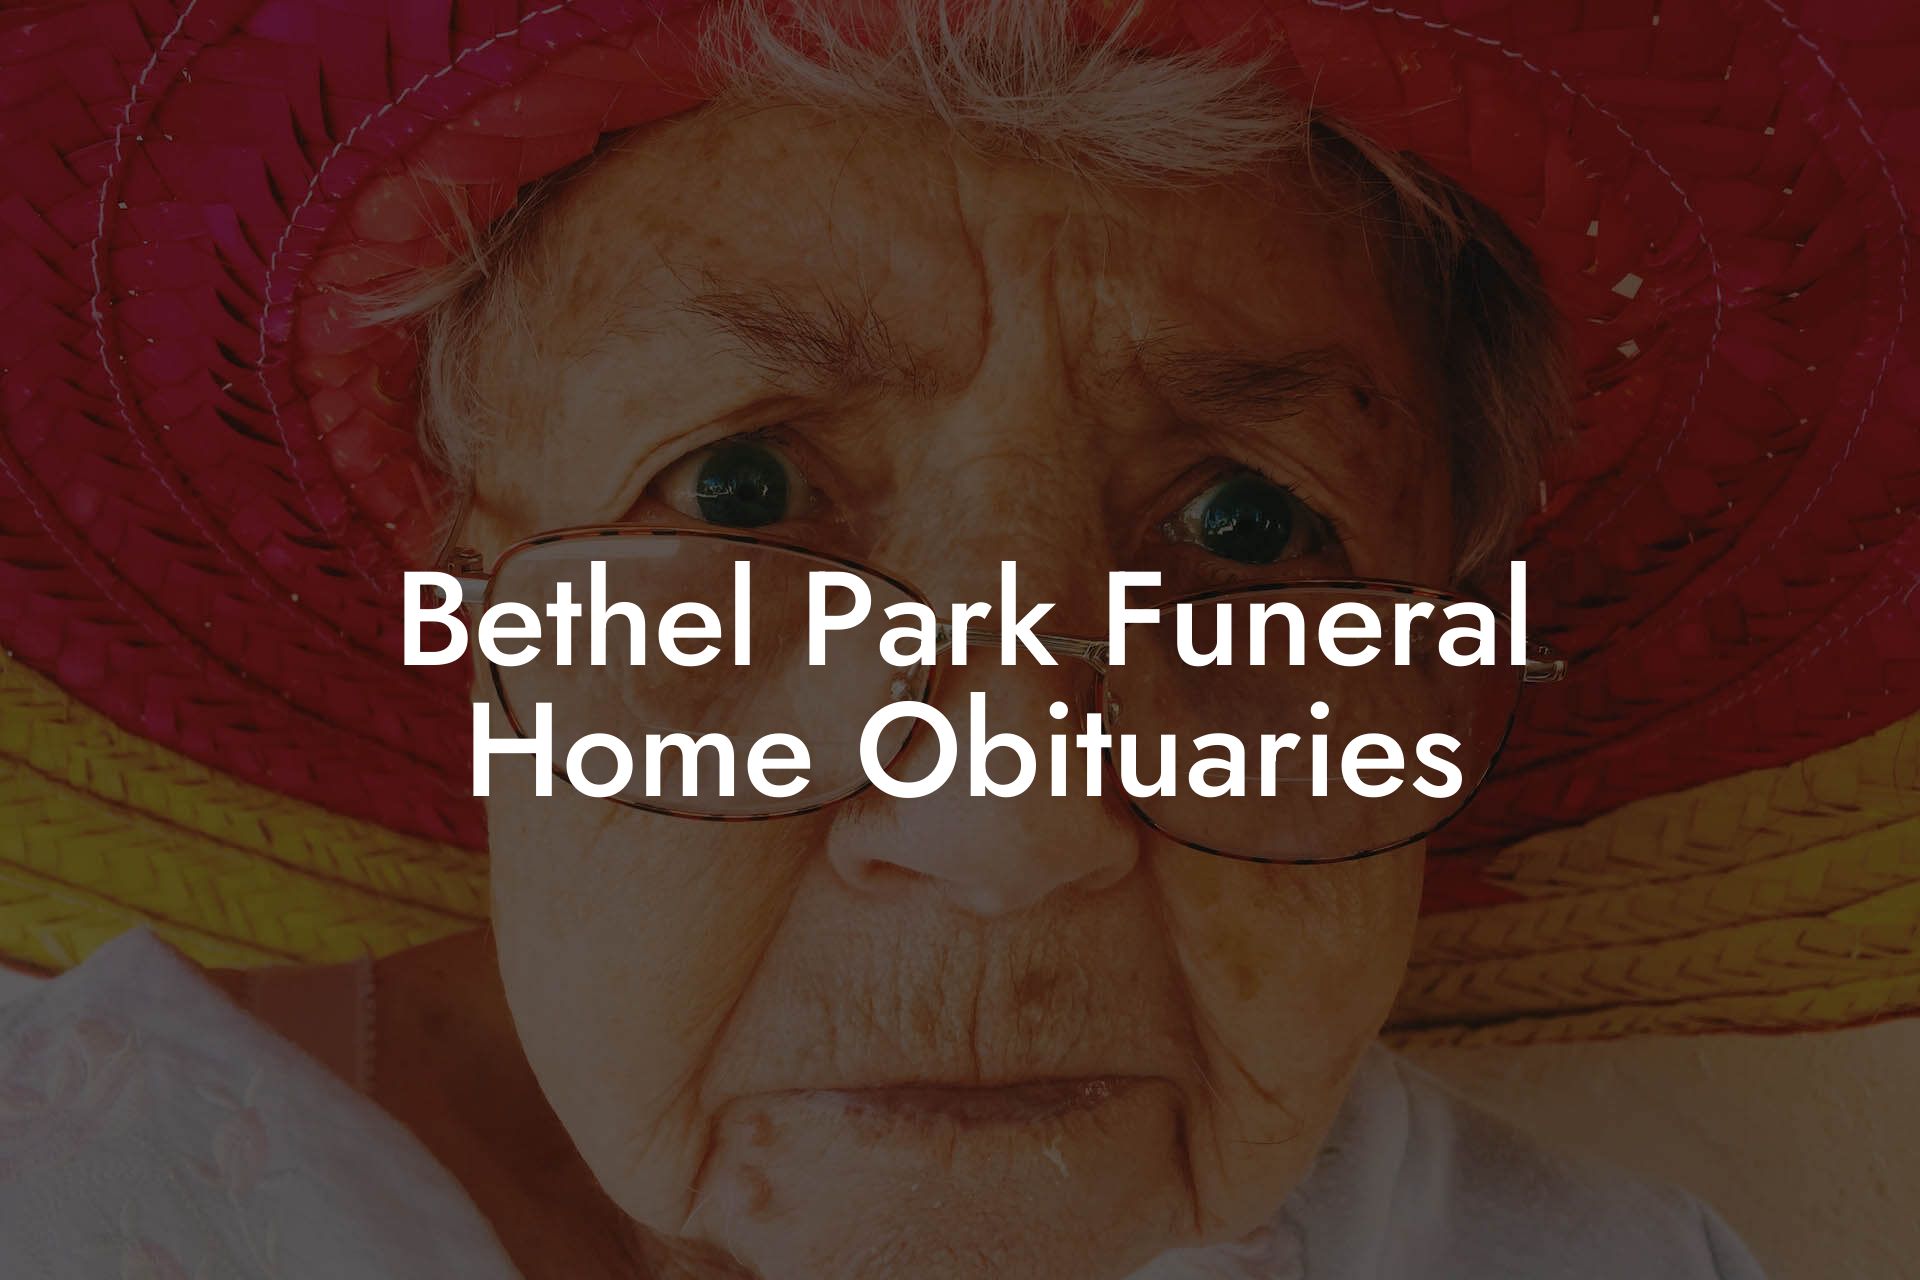 Bethel Park Funeral Home Obituaries